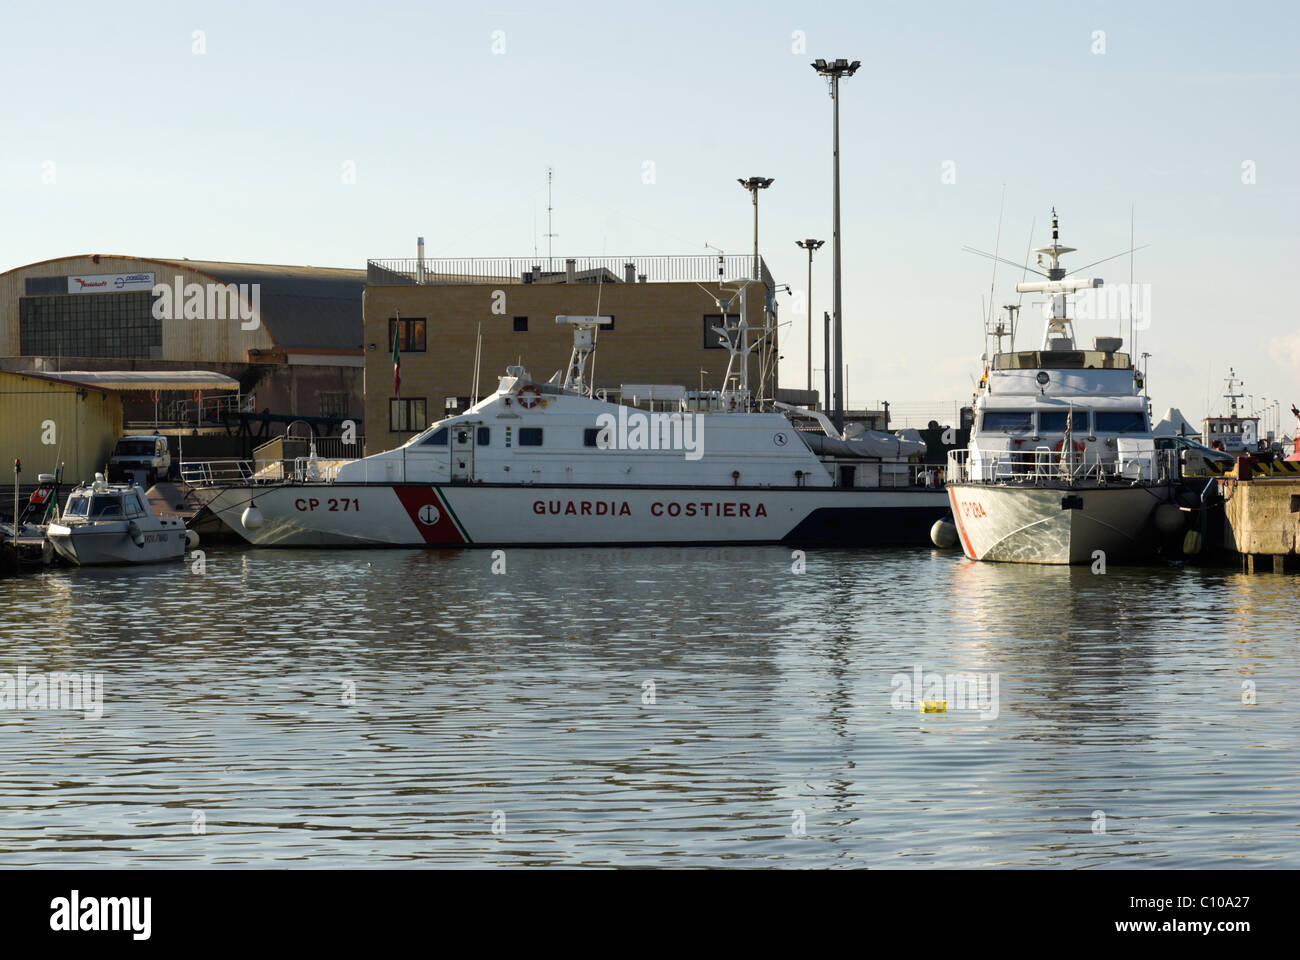 Guardia Costiera (coast guard) boat in Fiumicino canal harbour Stock Photo